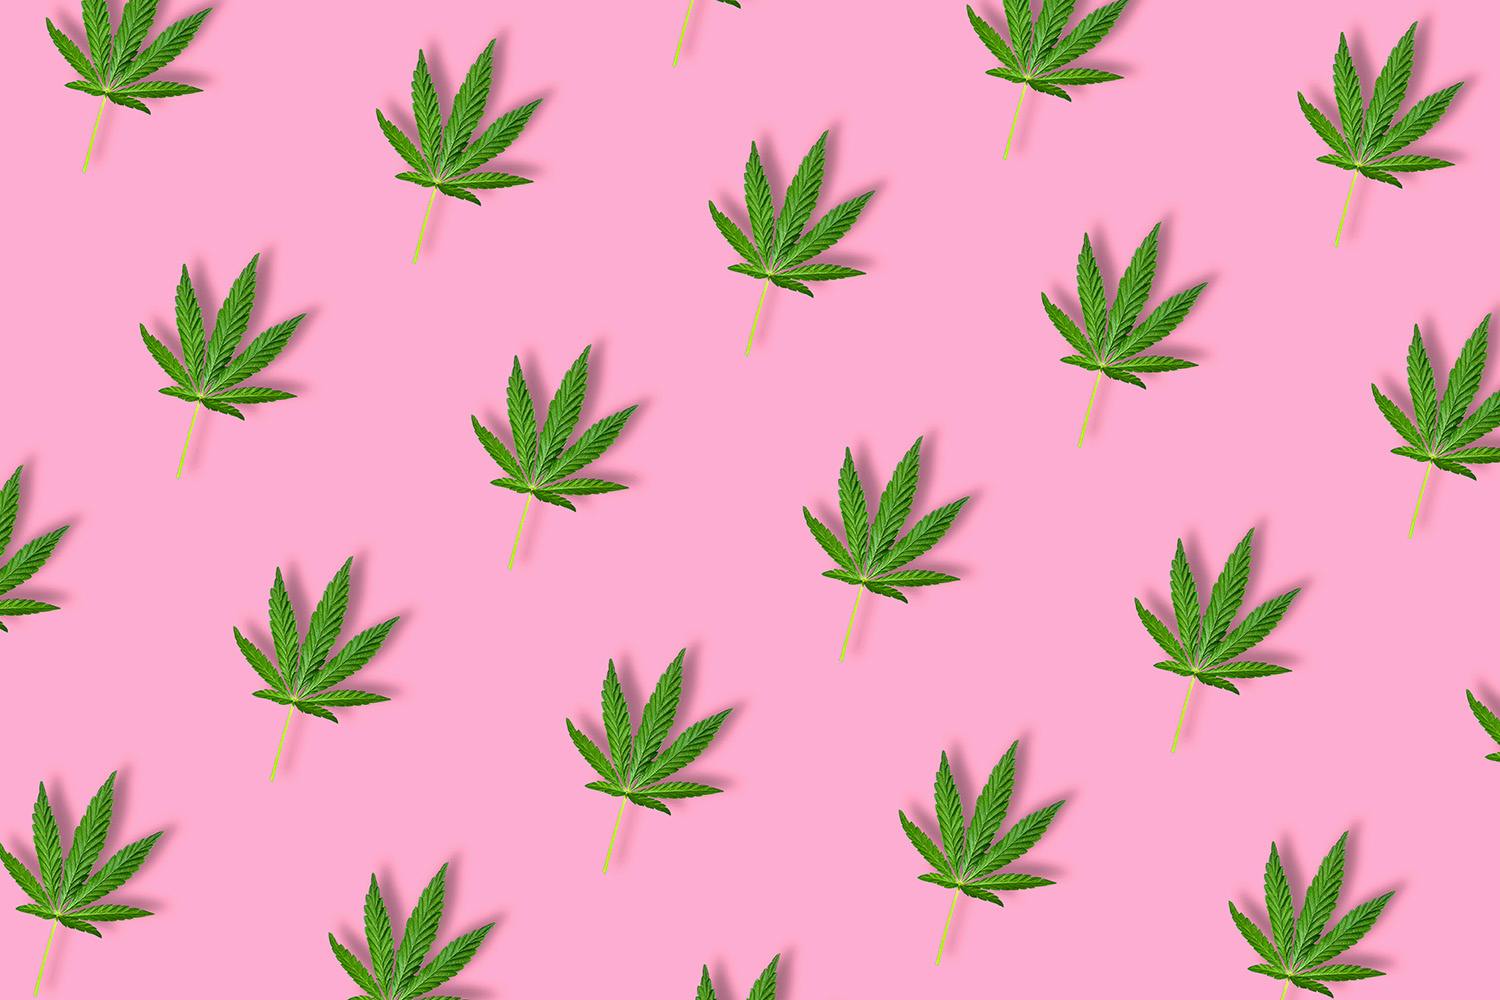 Marijuana leaves on pink background